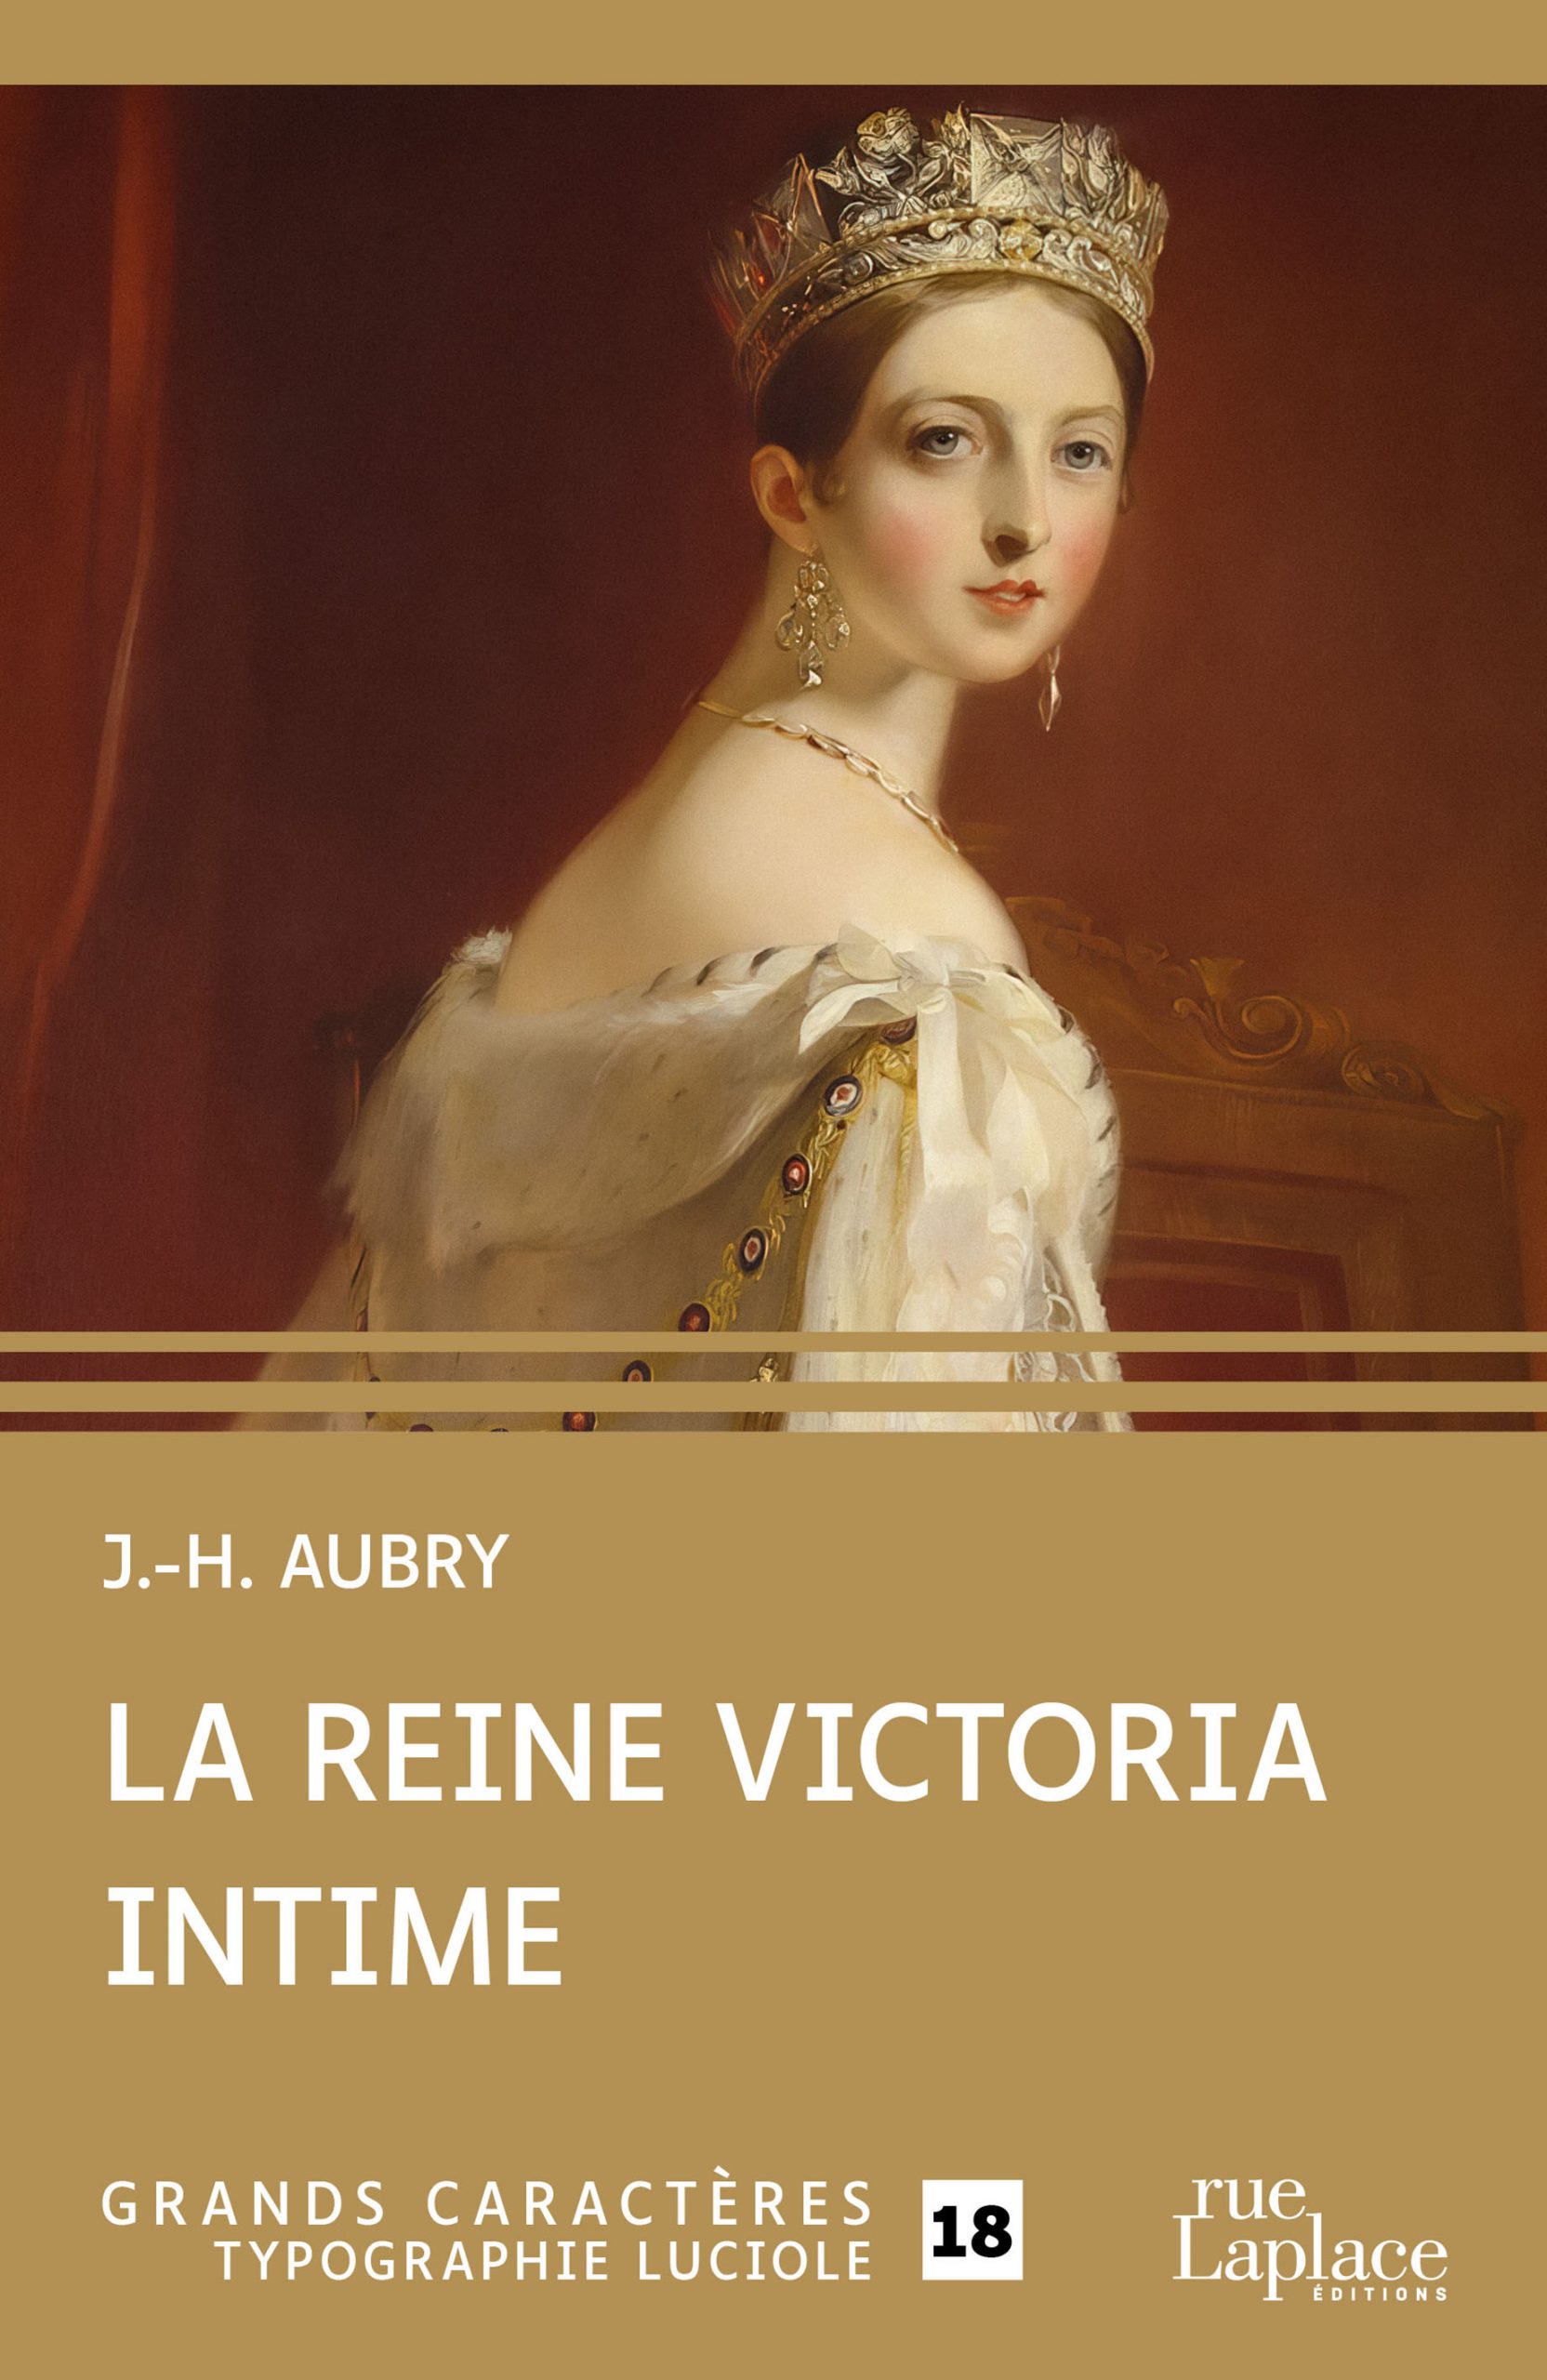 Couverture du livre en grands caractères La reine Victoria intime de J.-H. Aubry